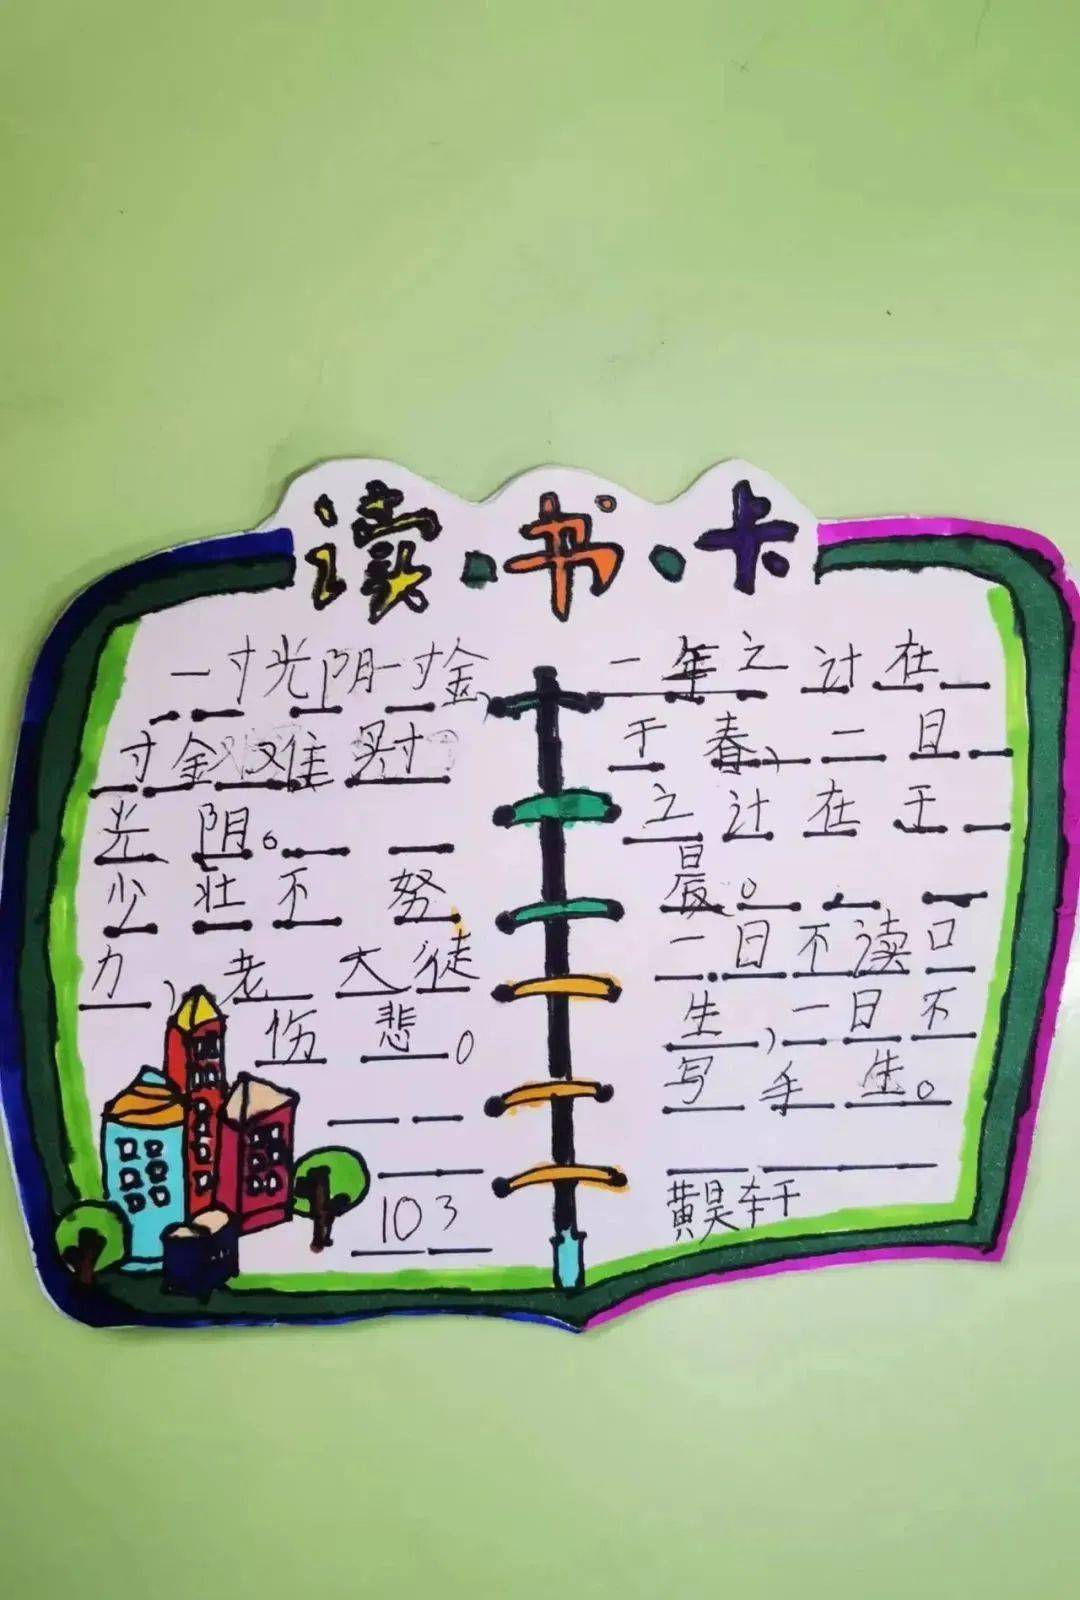 语文花开——九江中心小学低年级组学生制作读书卡活动